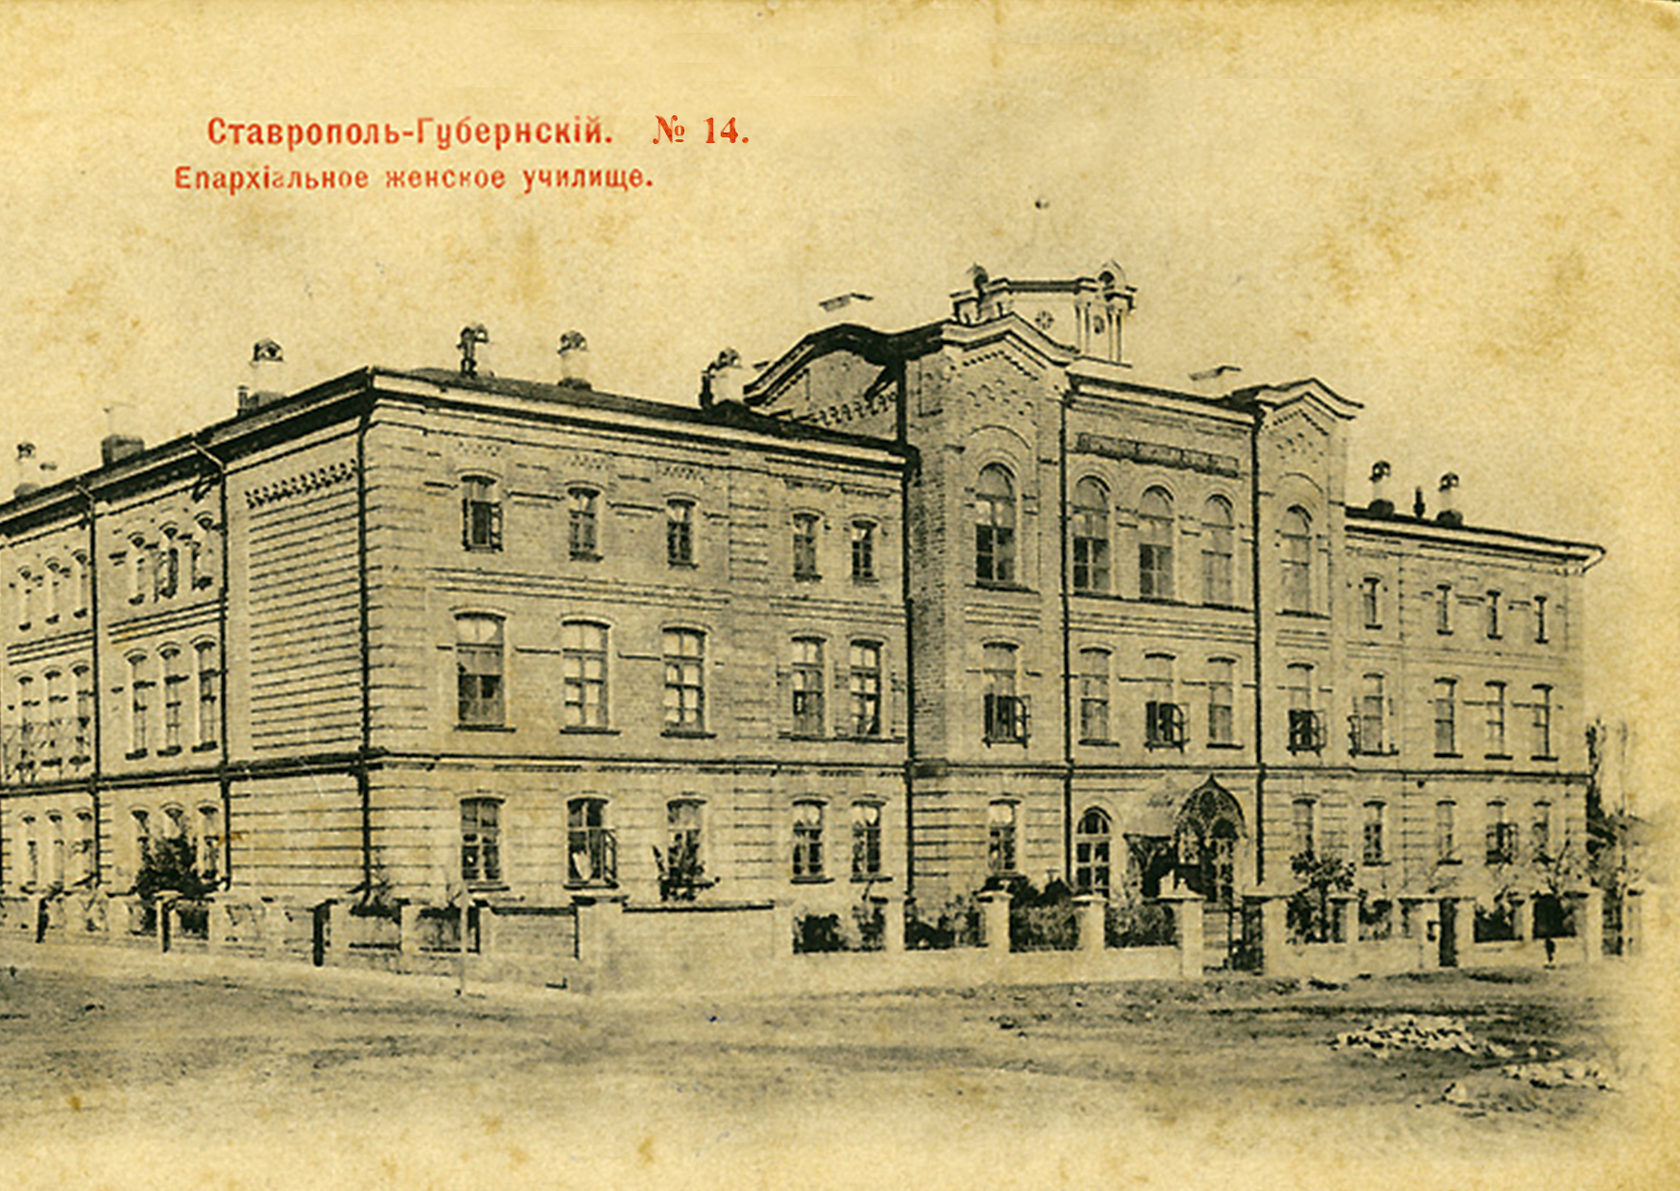 фото почтовая ретро-открытка дореволюционного времени с изображением Епархиального женского училища проспекта города Ставрополя